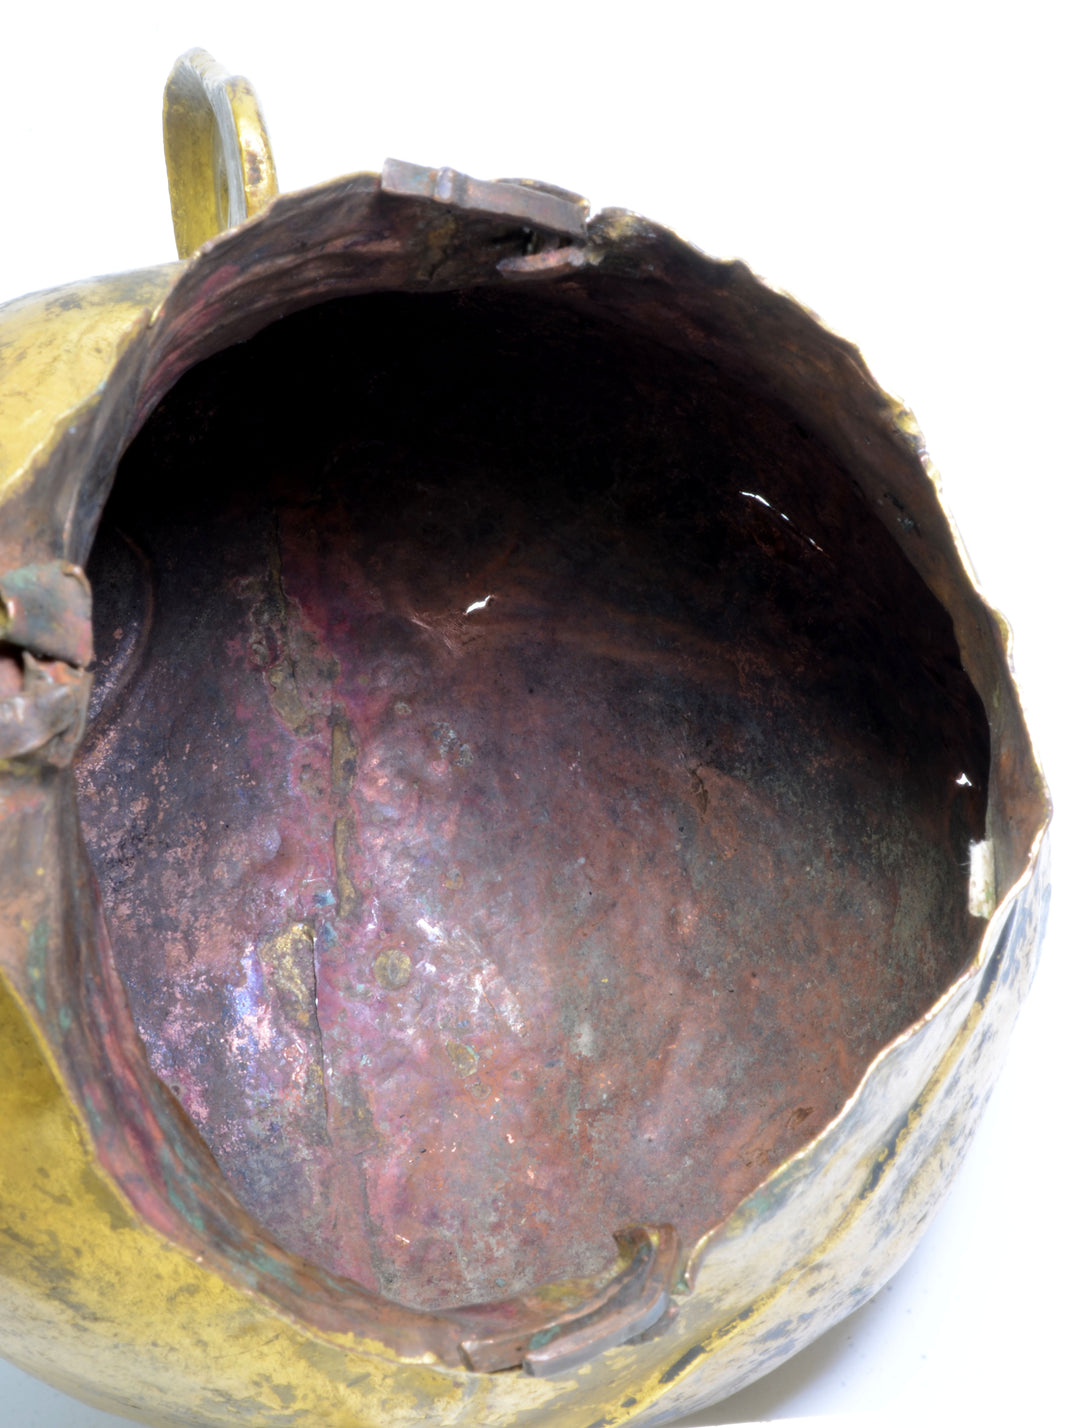 Tibetan Gilt Copper Lifesize Head of a Lohan